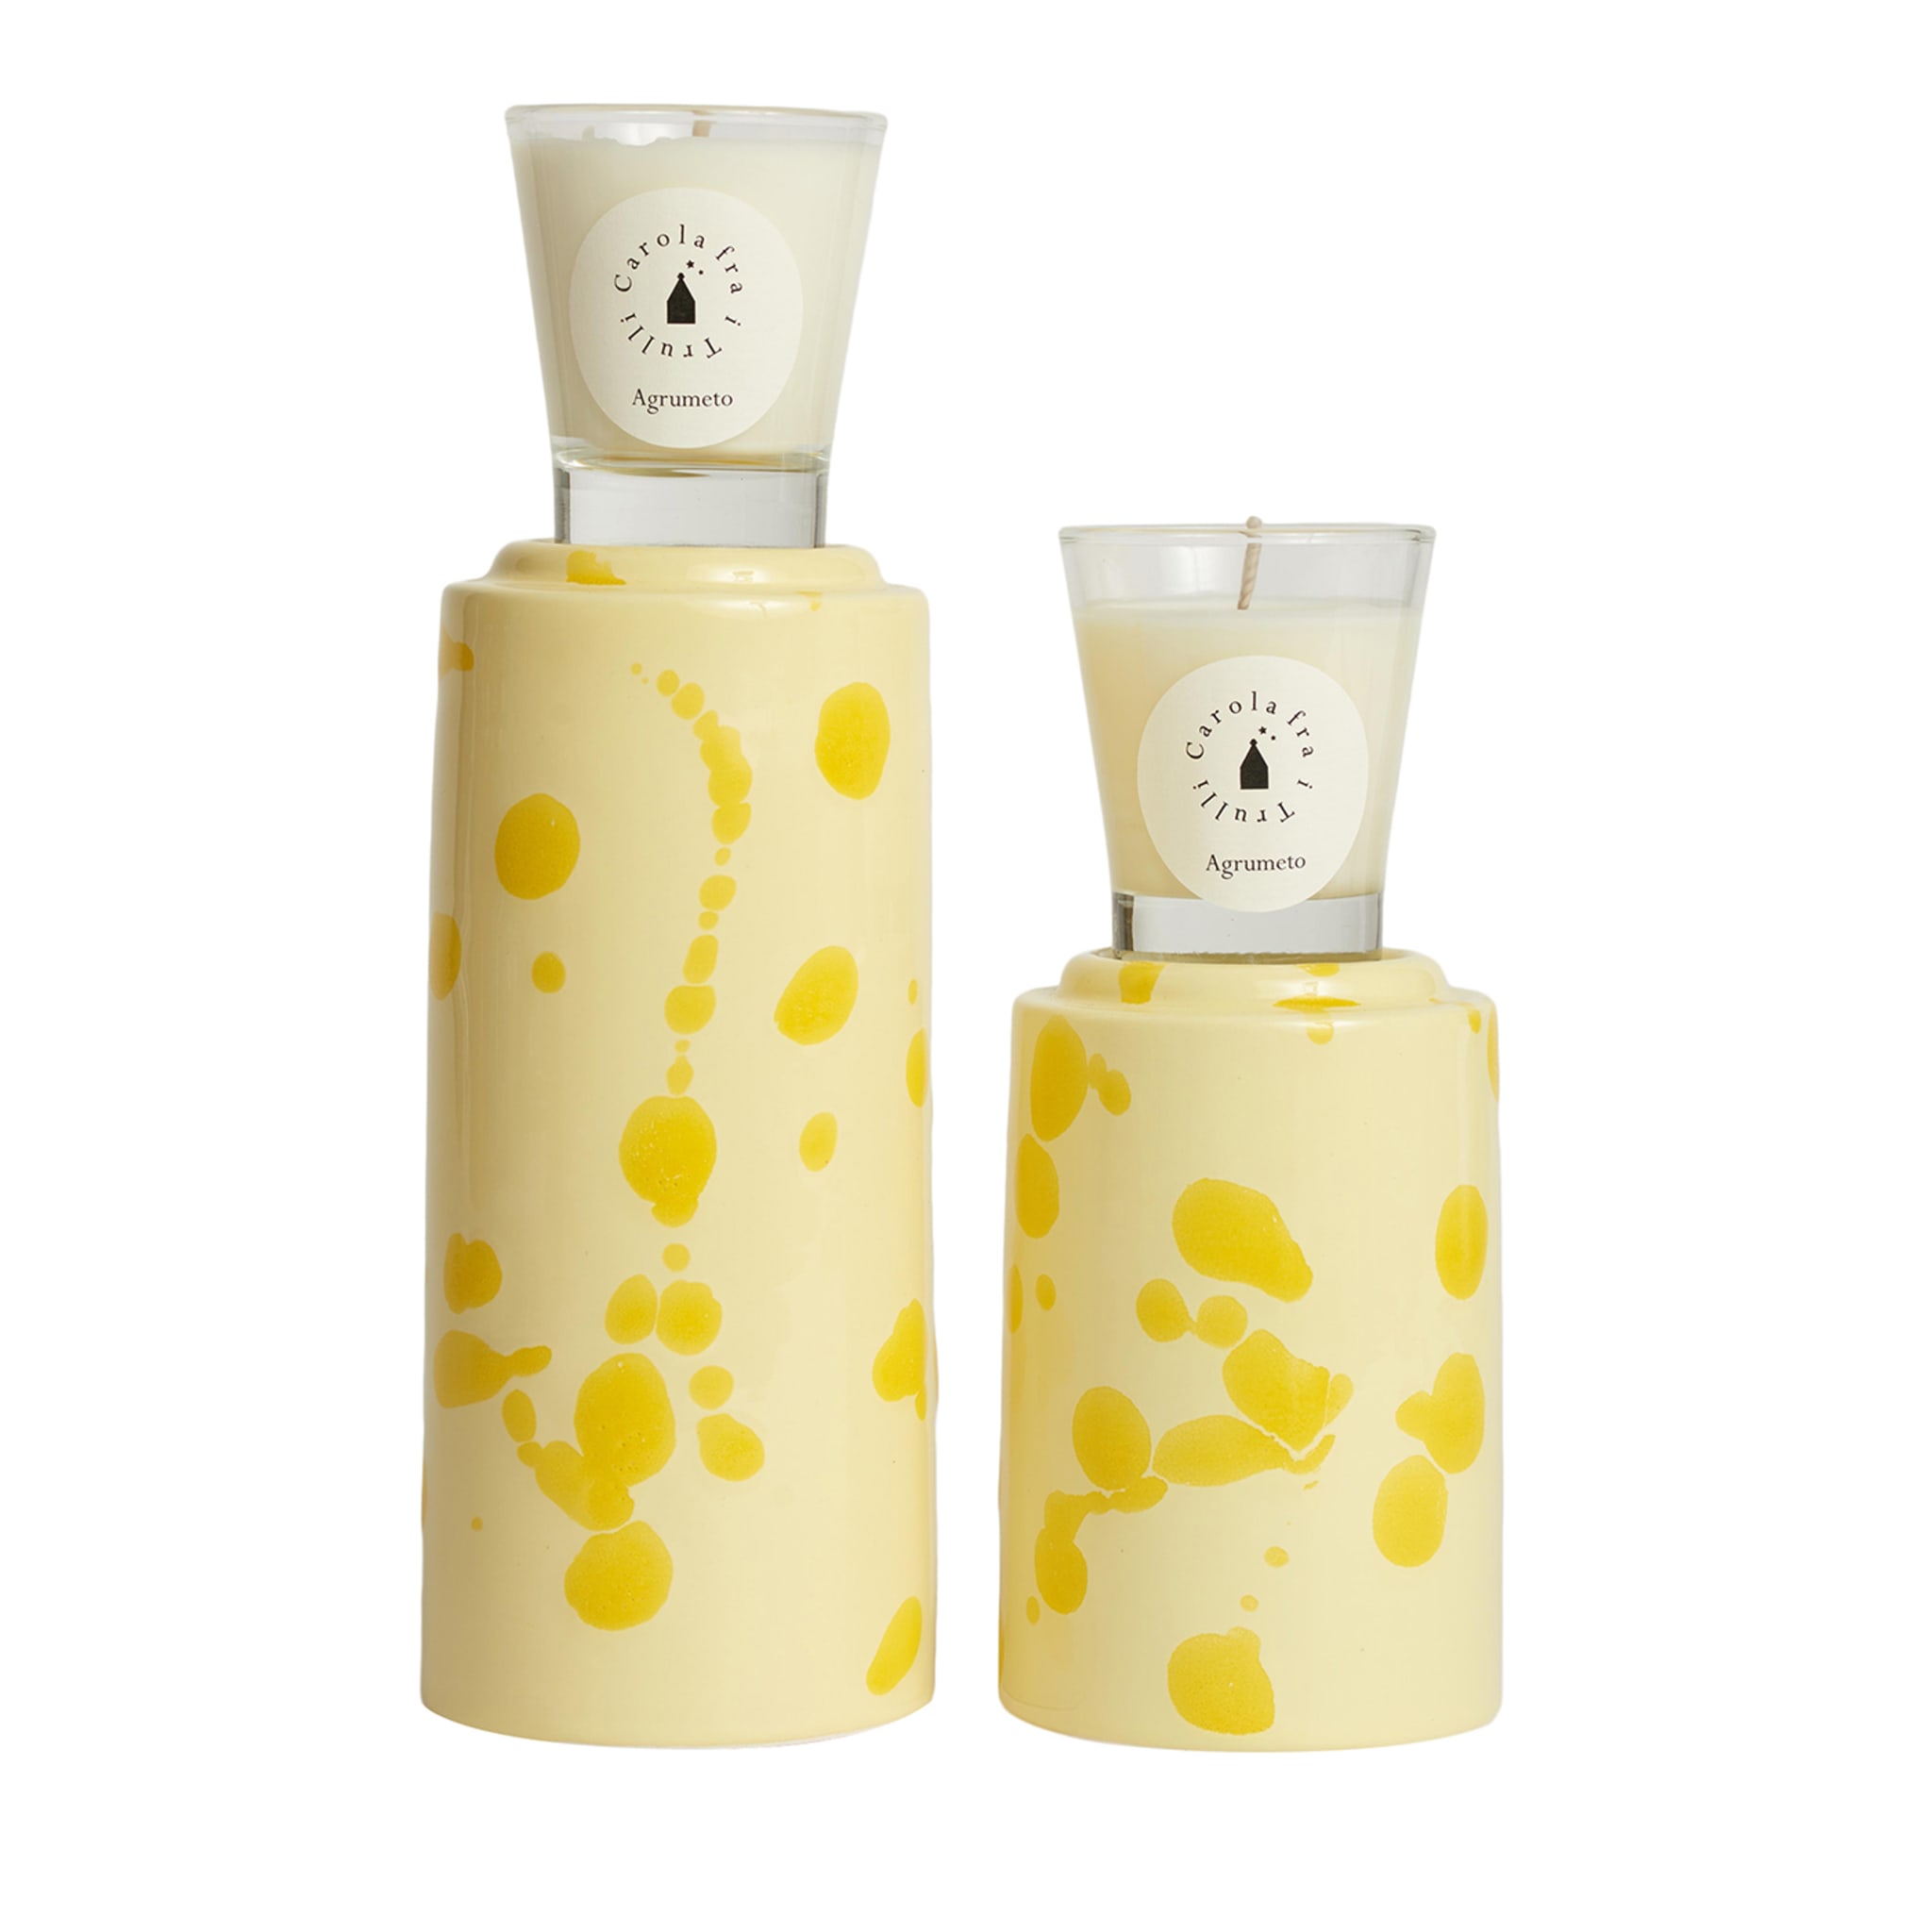 Totem crema e giallo con candela profumata Agrumeto  - Vista principale